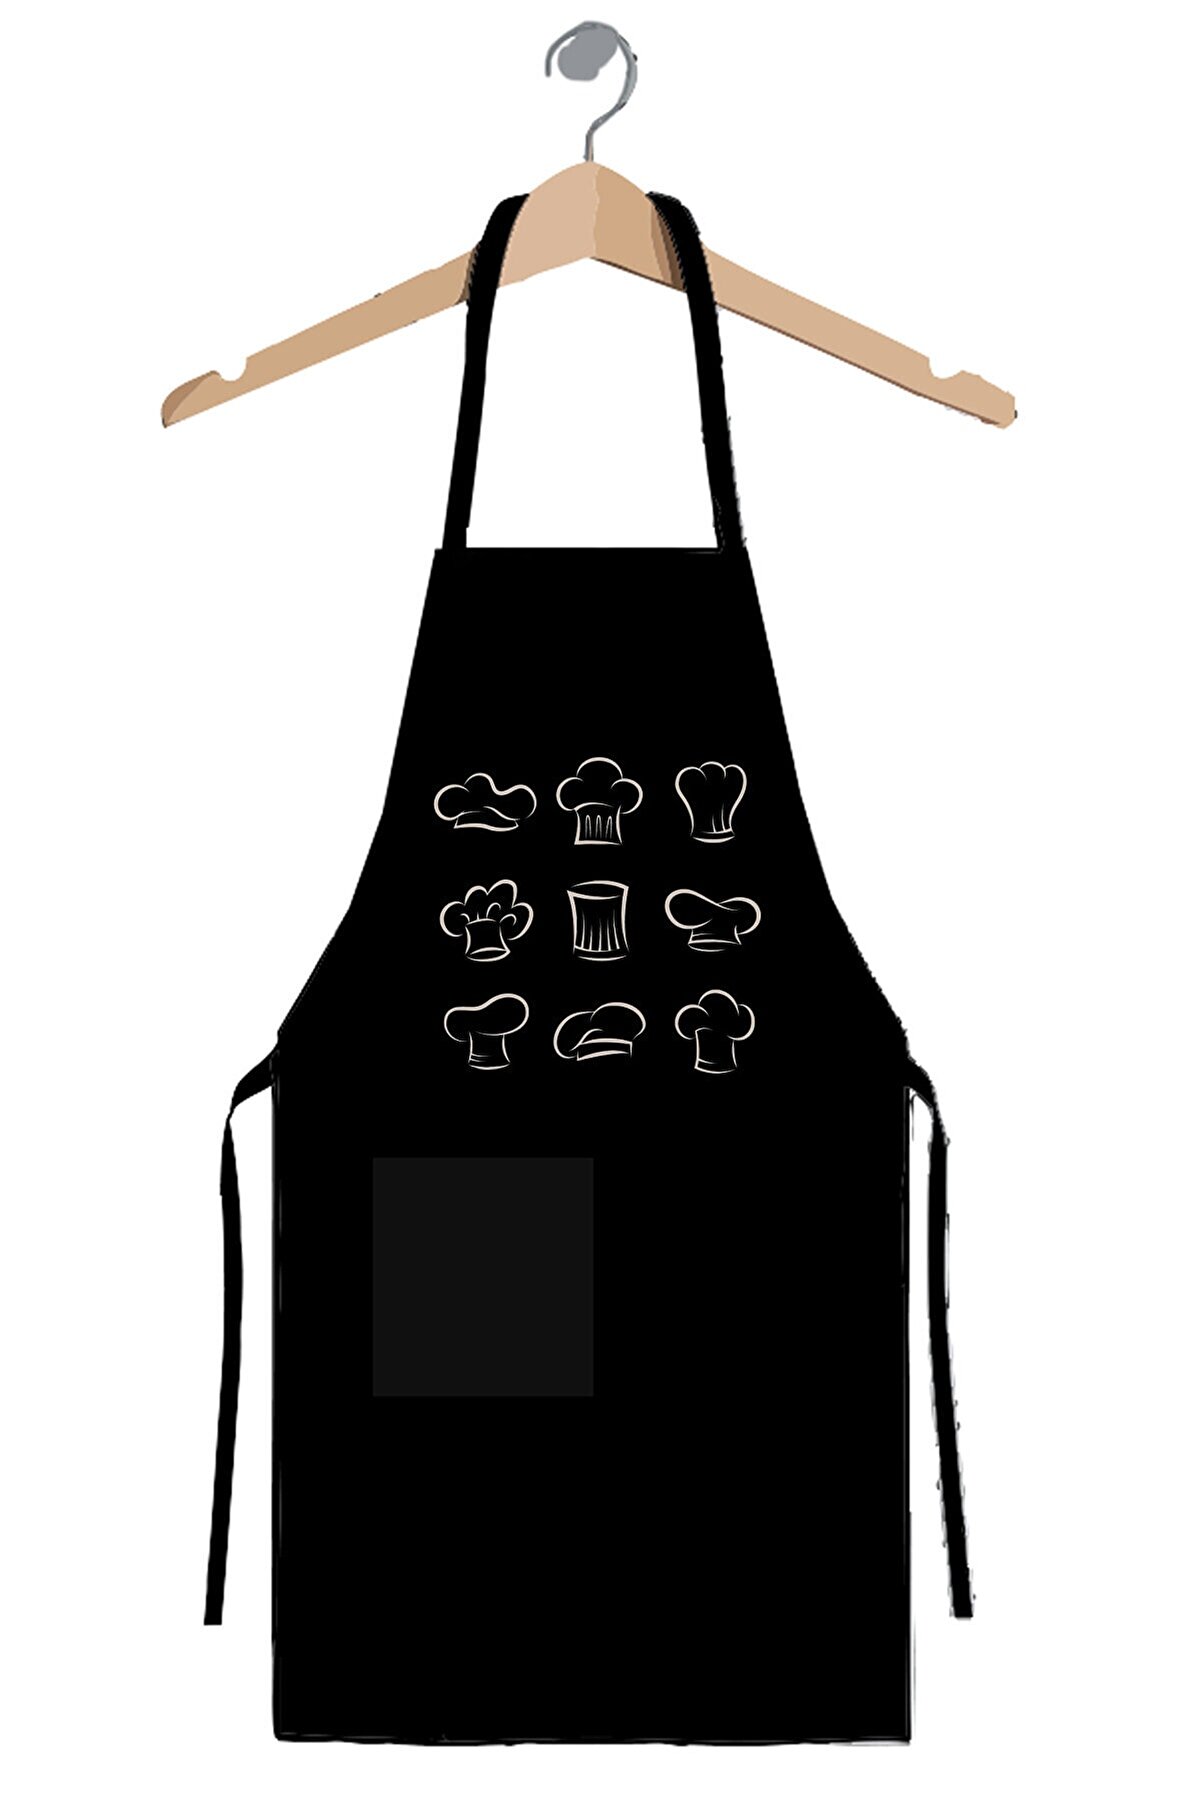 Art T-Shirt Chef Bonnet Mutfak Önlüğü